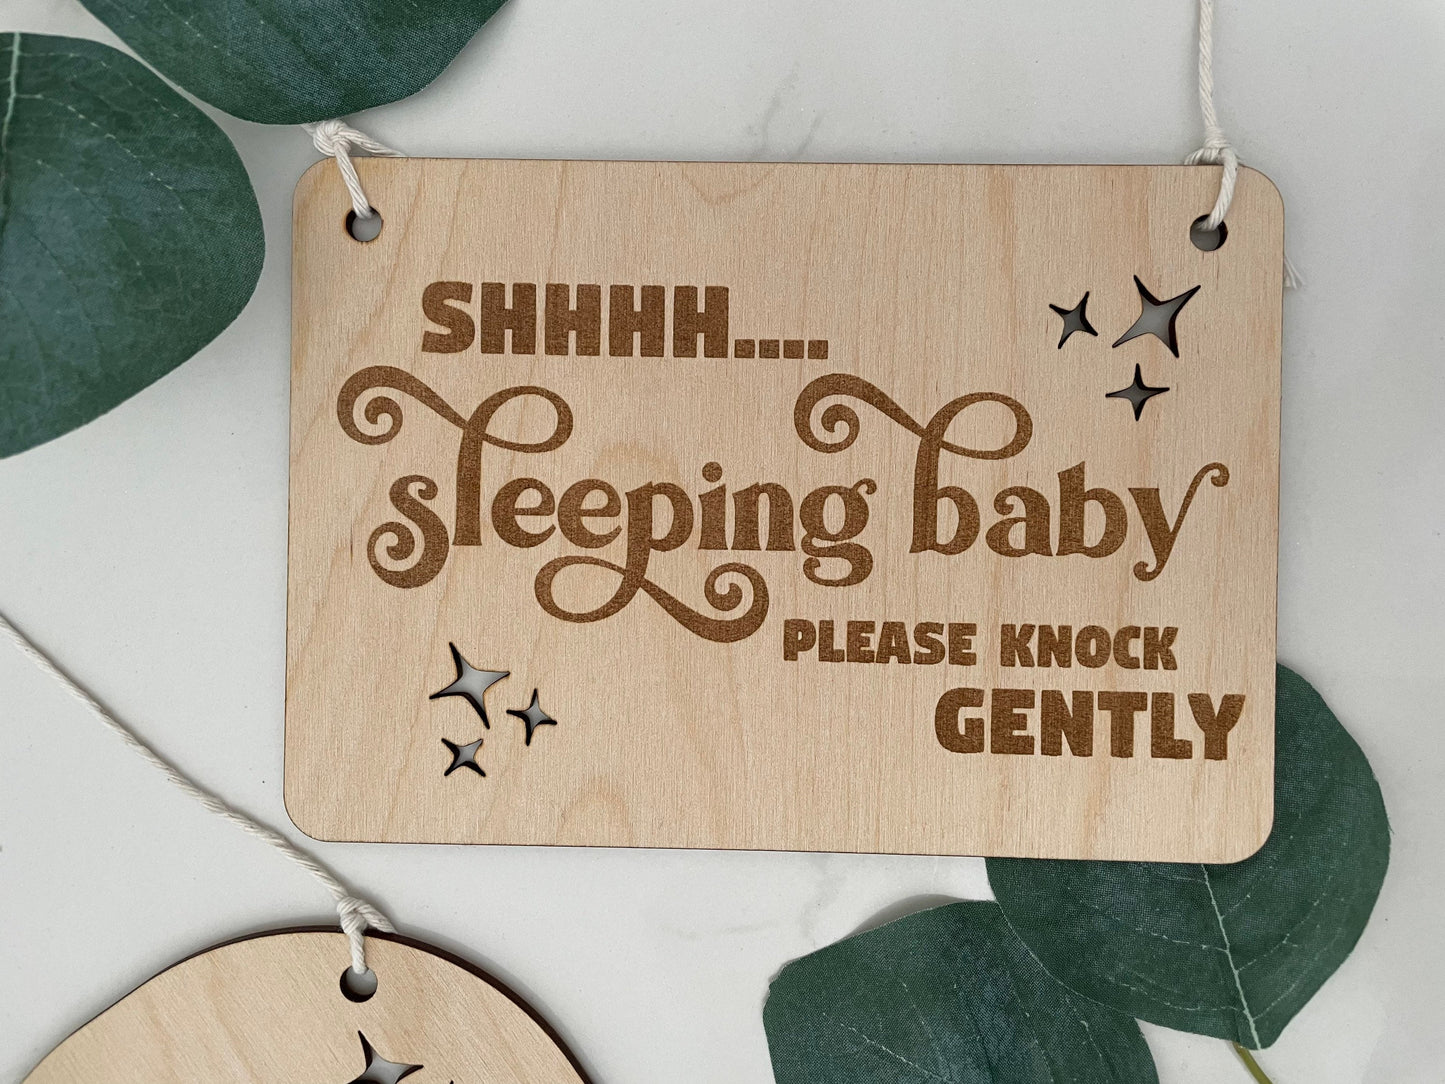 Baby sleeping knock gently sign